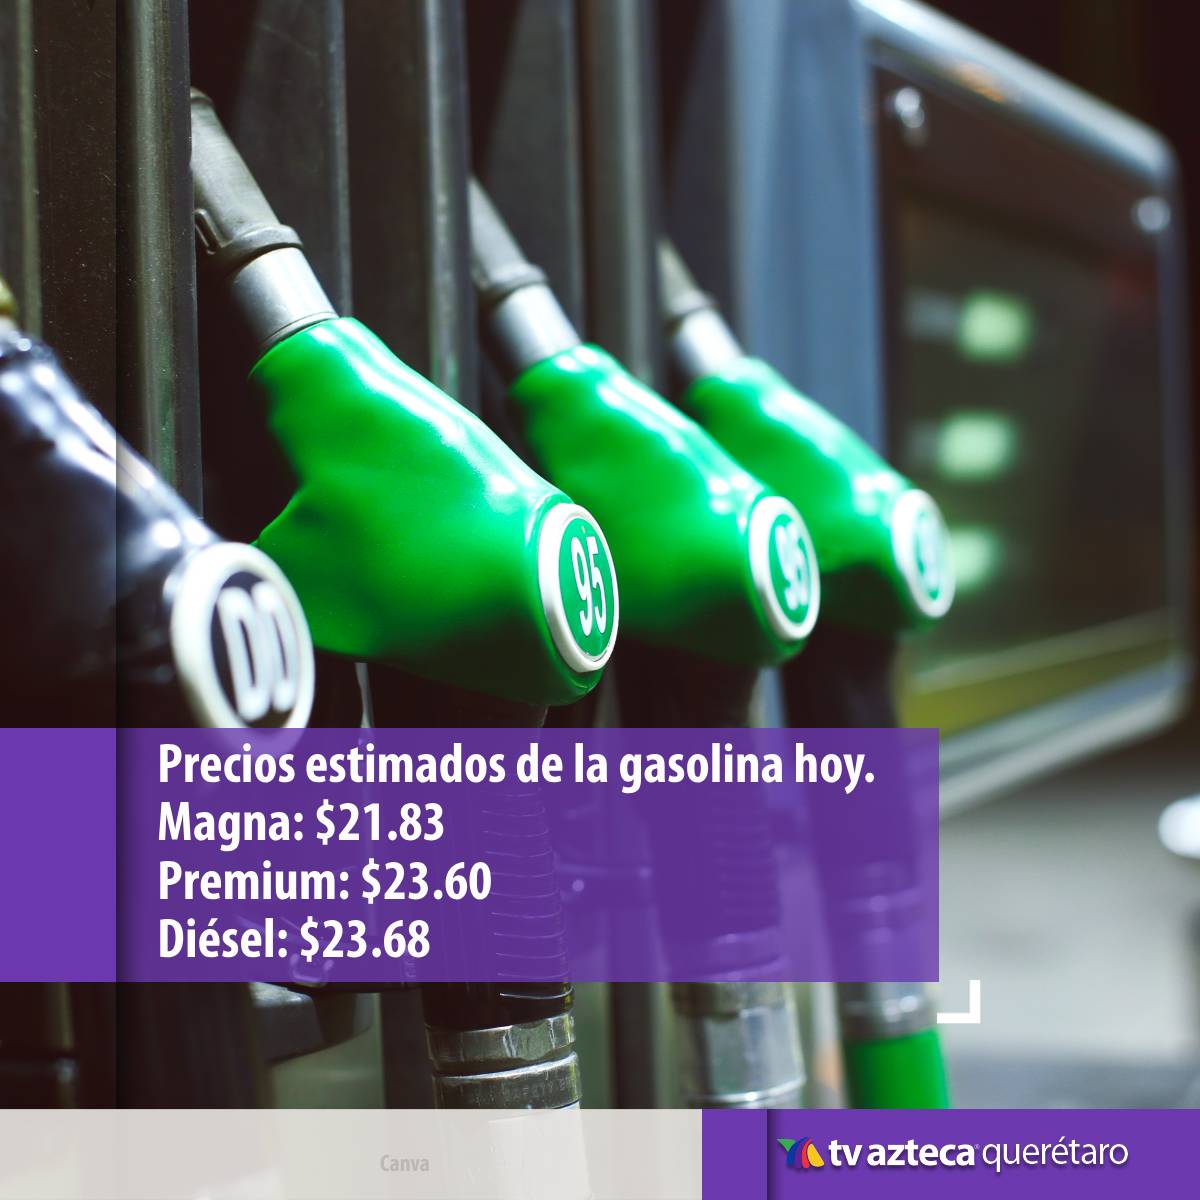 Este 04 de Junio te compartimos los precios estimados de la gasolina hoy en Querétaro. Detecta si es buena opción cargar combustible en este día. 👍⛽

#TvAztecaQuerétaro #PreciosEstimadosGasolina